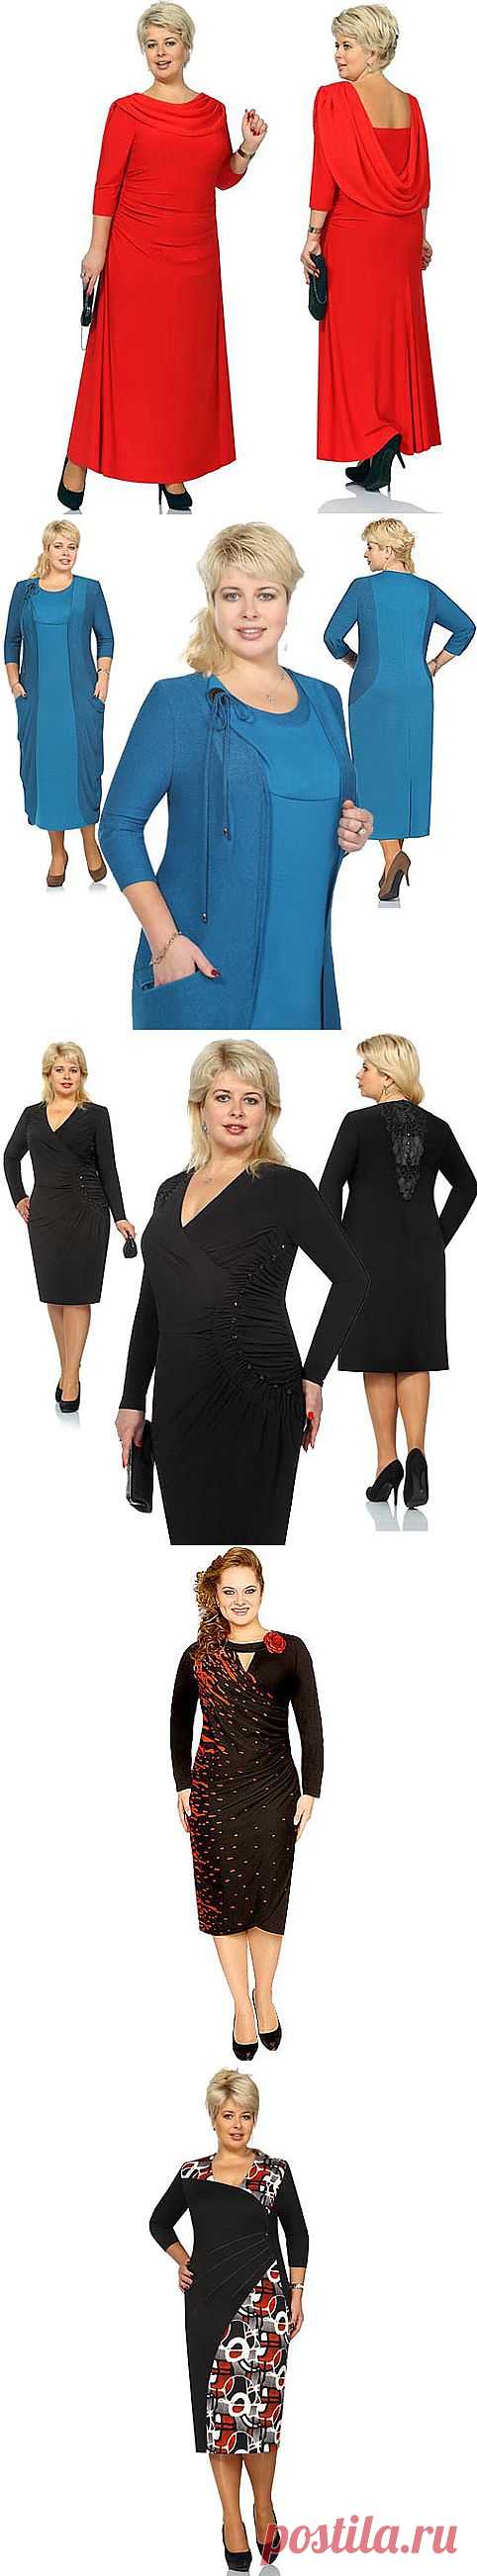 Платья для полных женщин белорусской компании Новелла Шарм. Осень-зима 2013-2014 - Полная модница